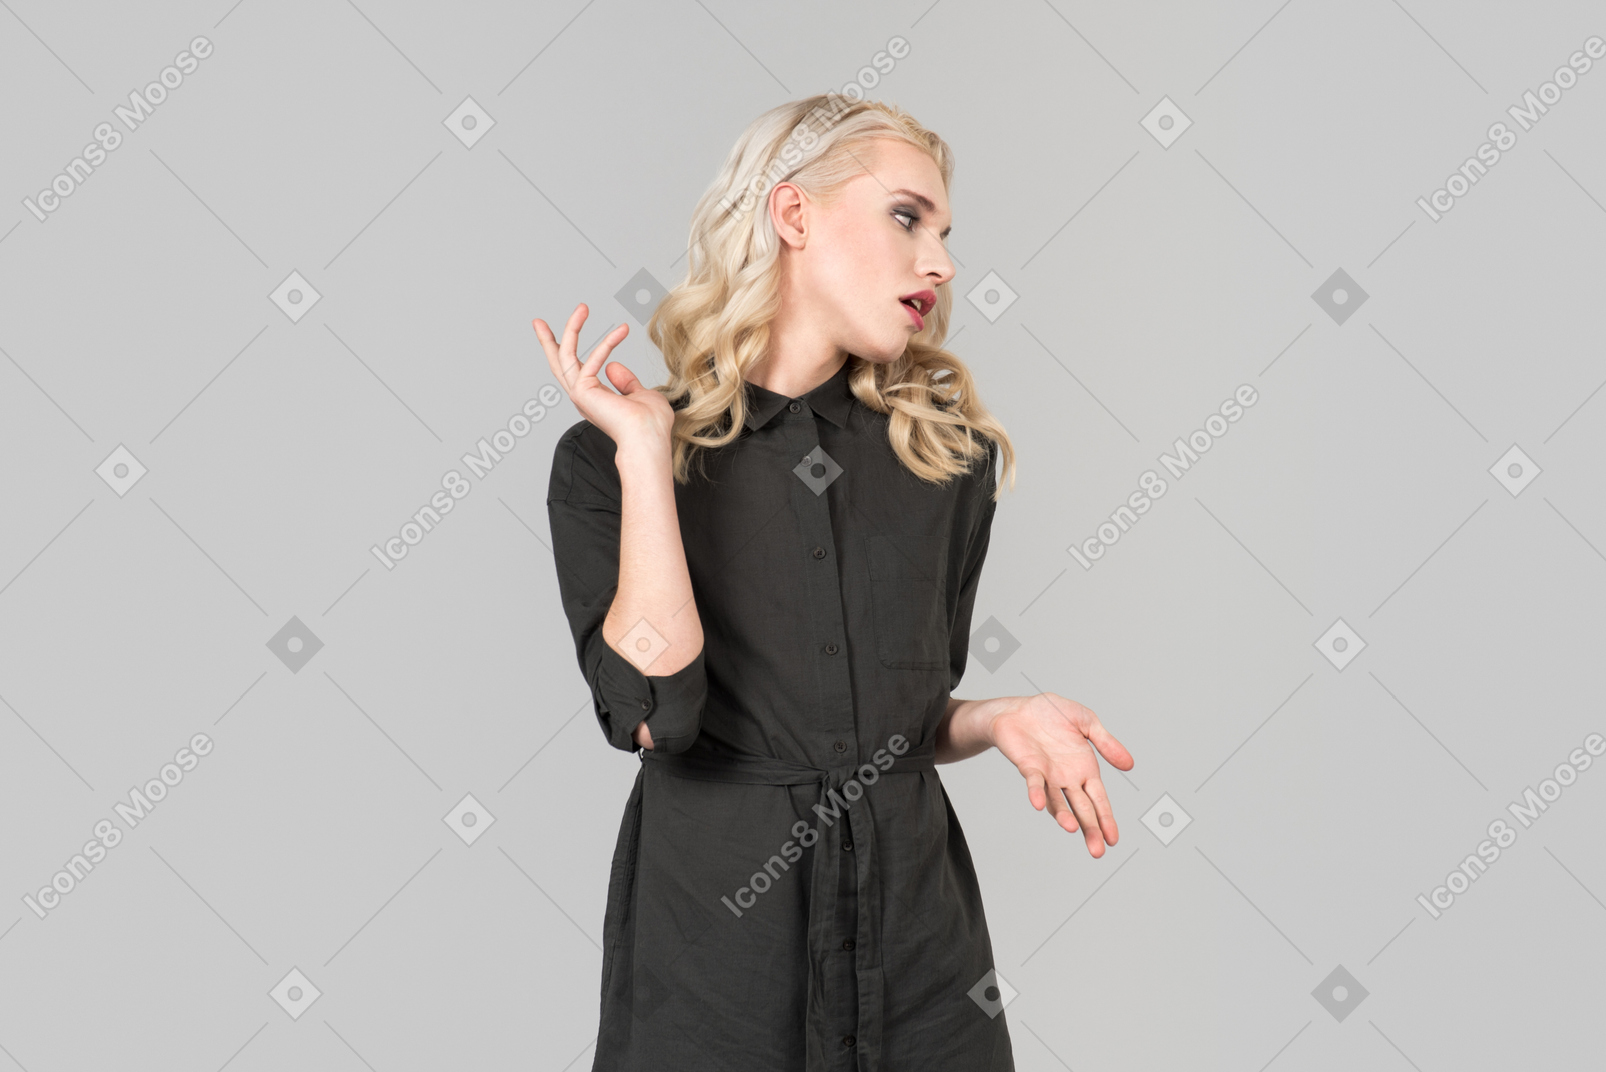 Une jeune personne aux cheveux blonds vêtue d'une robe noire se tenant debout sur le fond gris uni